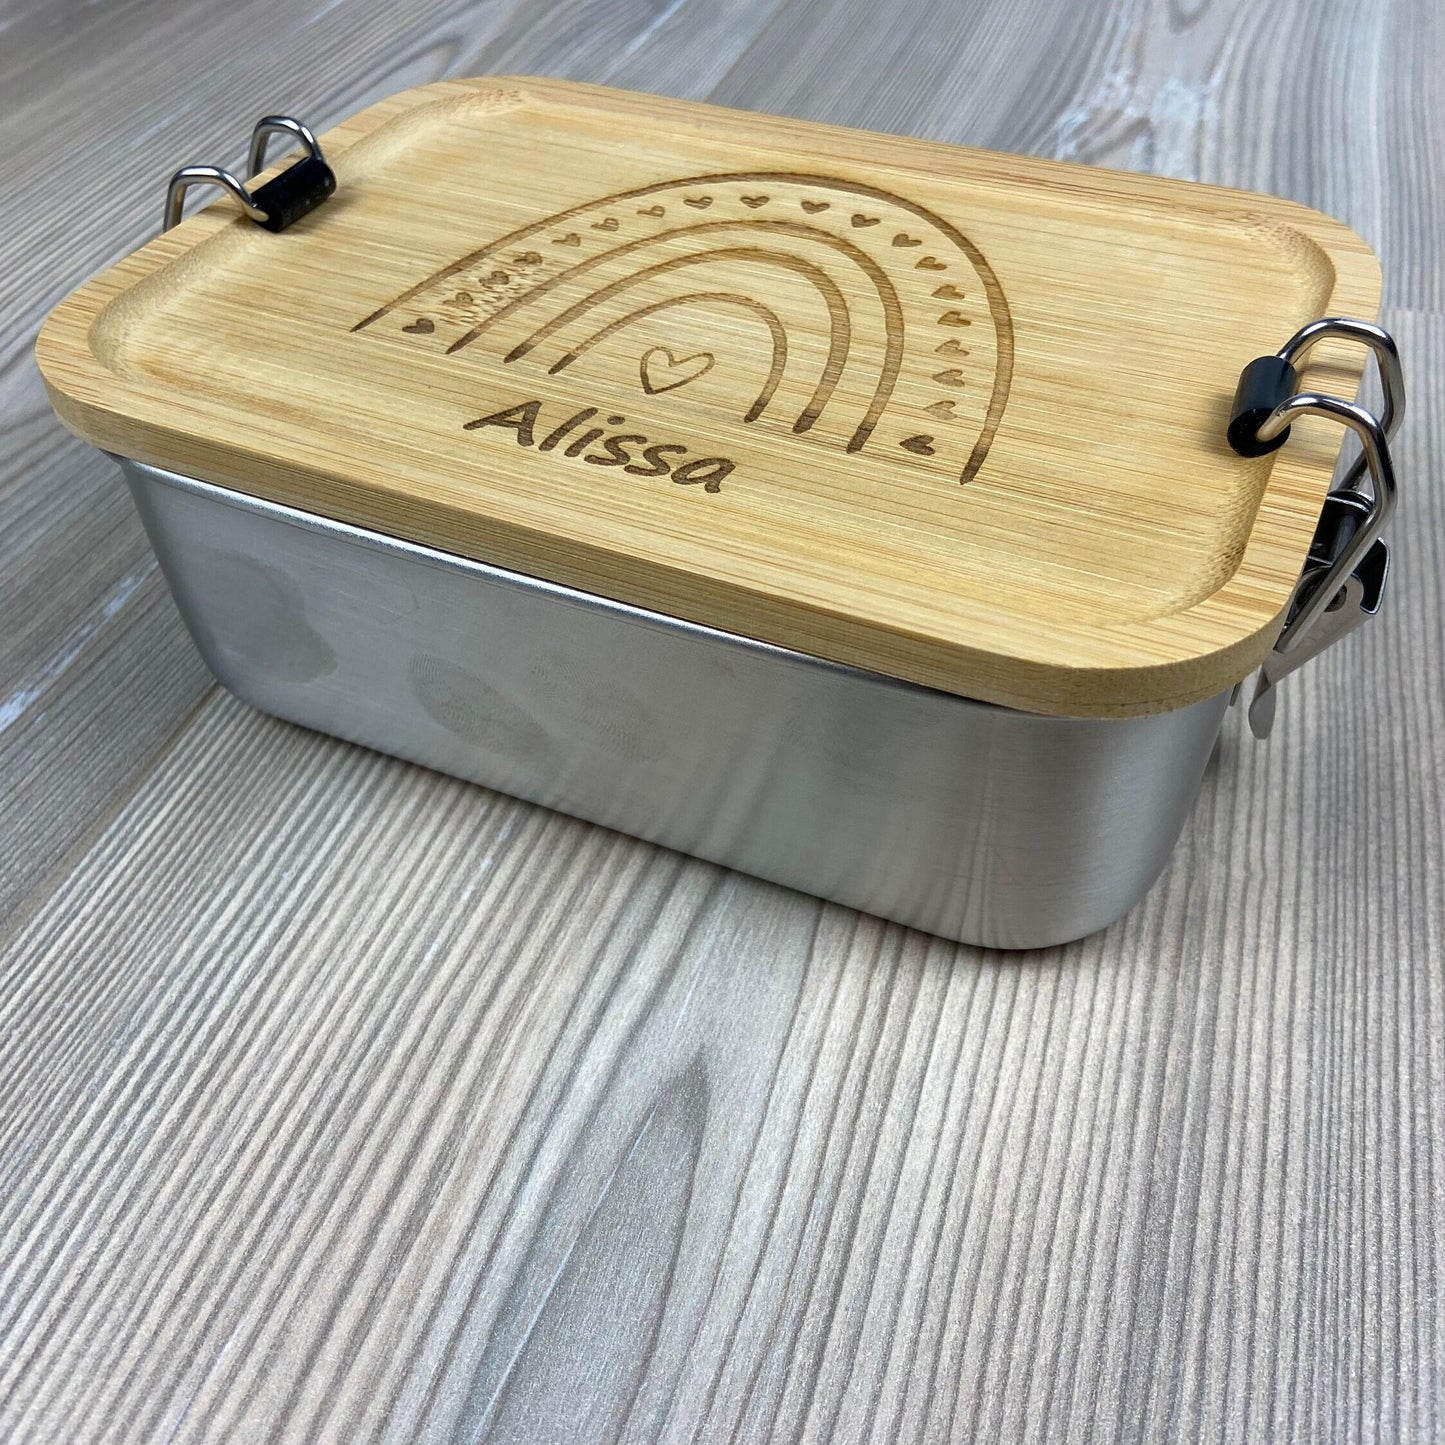 Lunchbox "Regenbogen" - mit Name personalisiert - aus Edelstahl mit Bambusdeckel